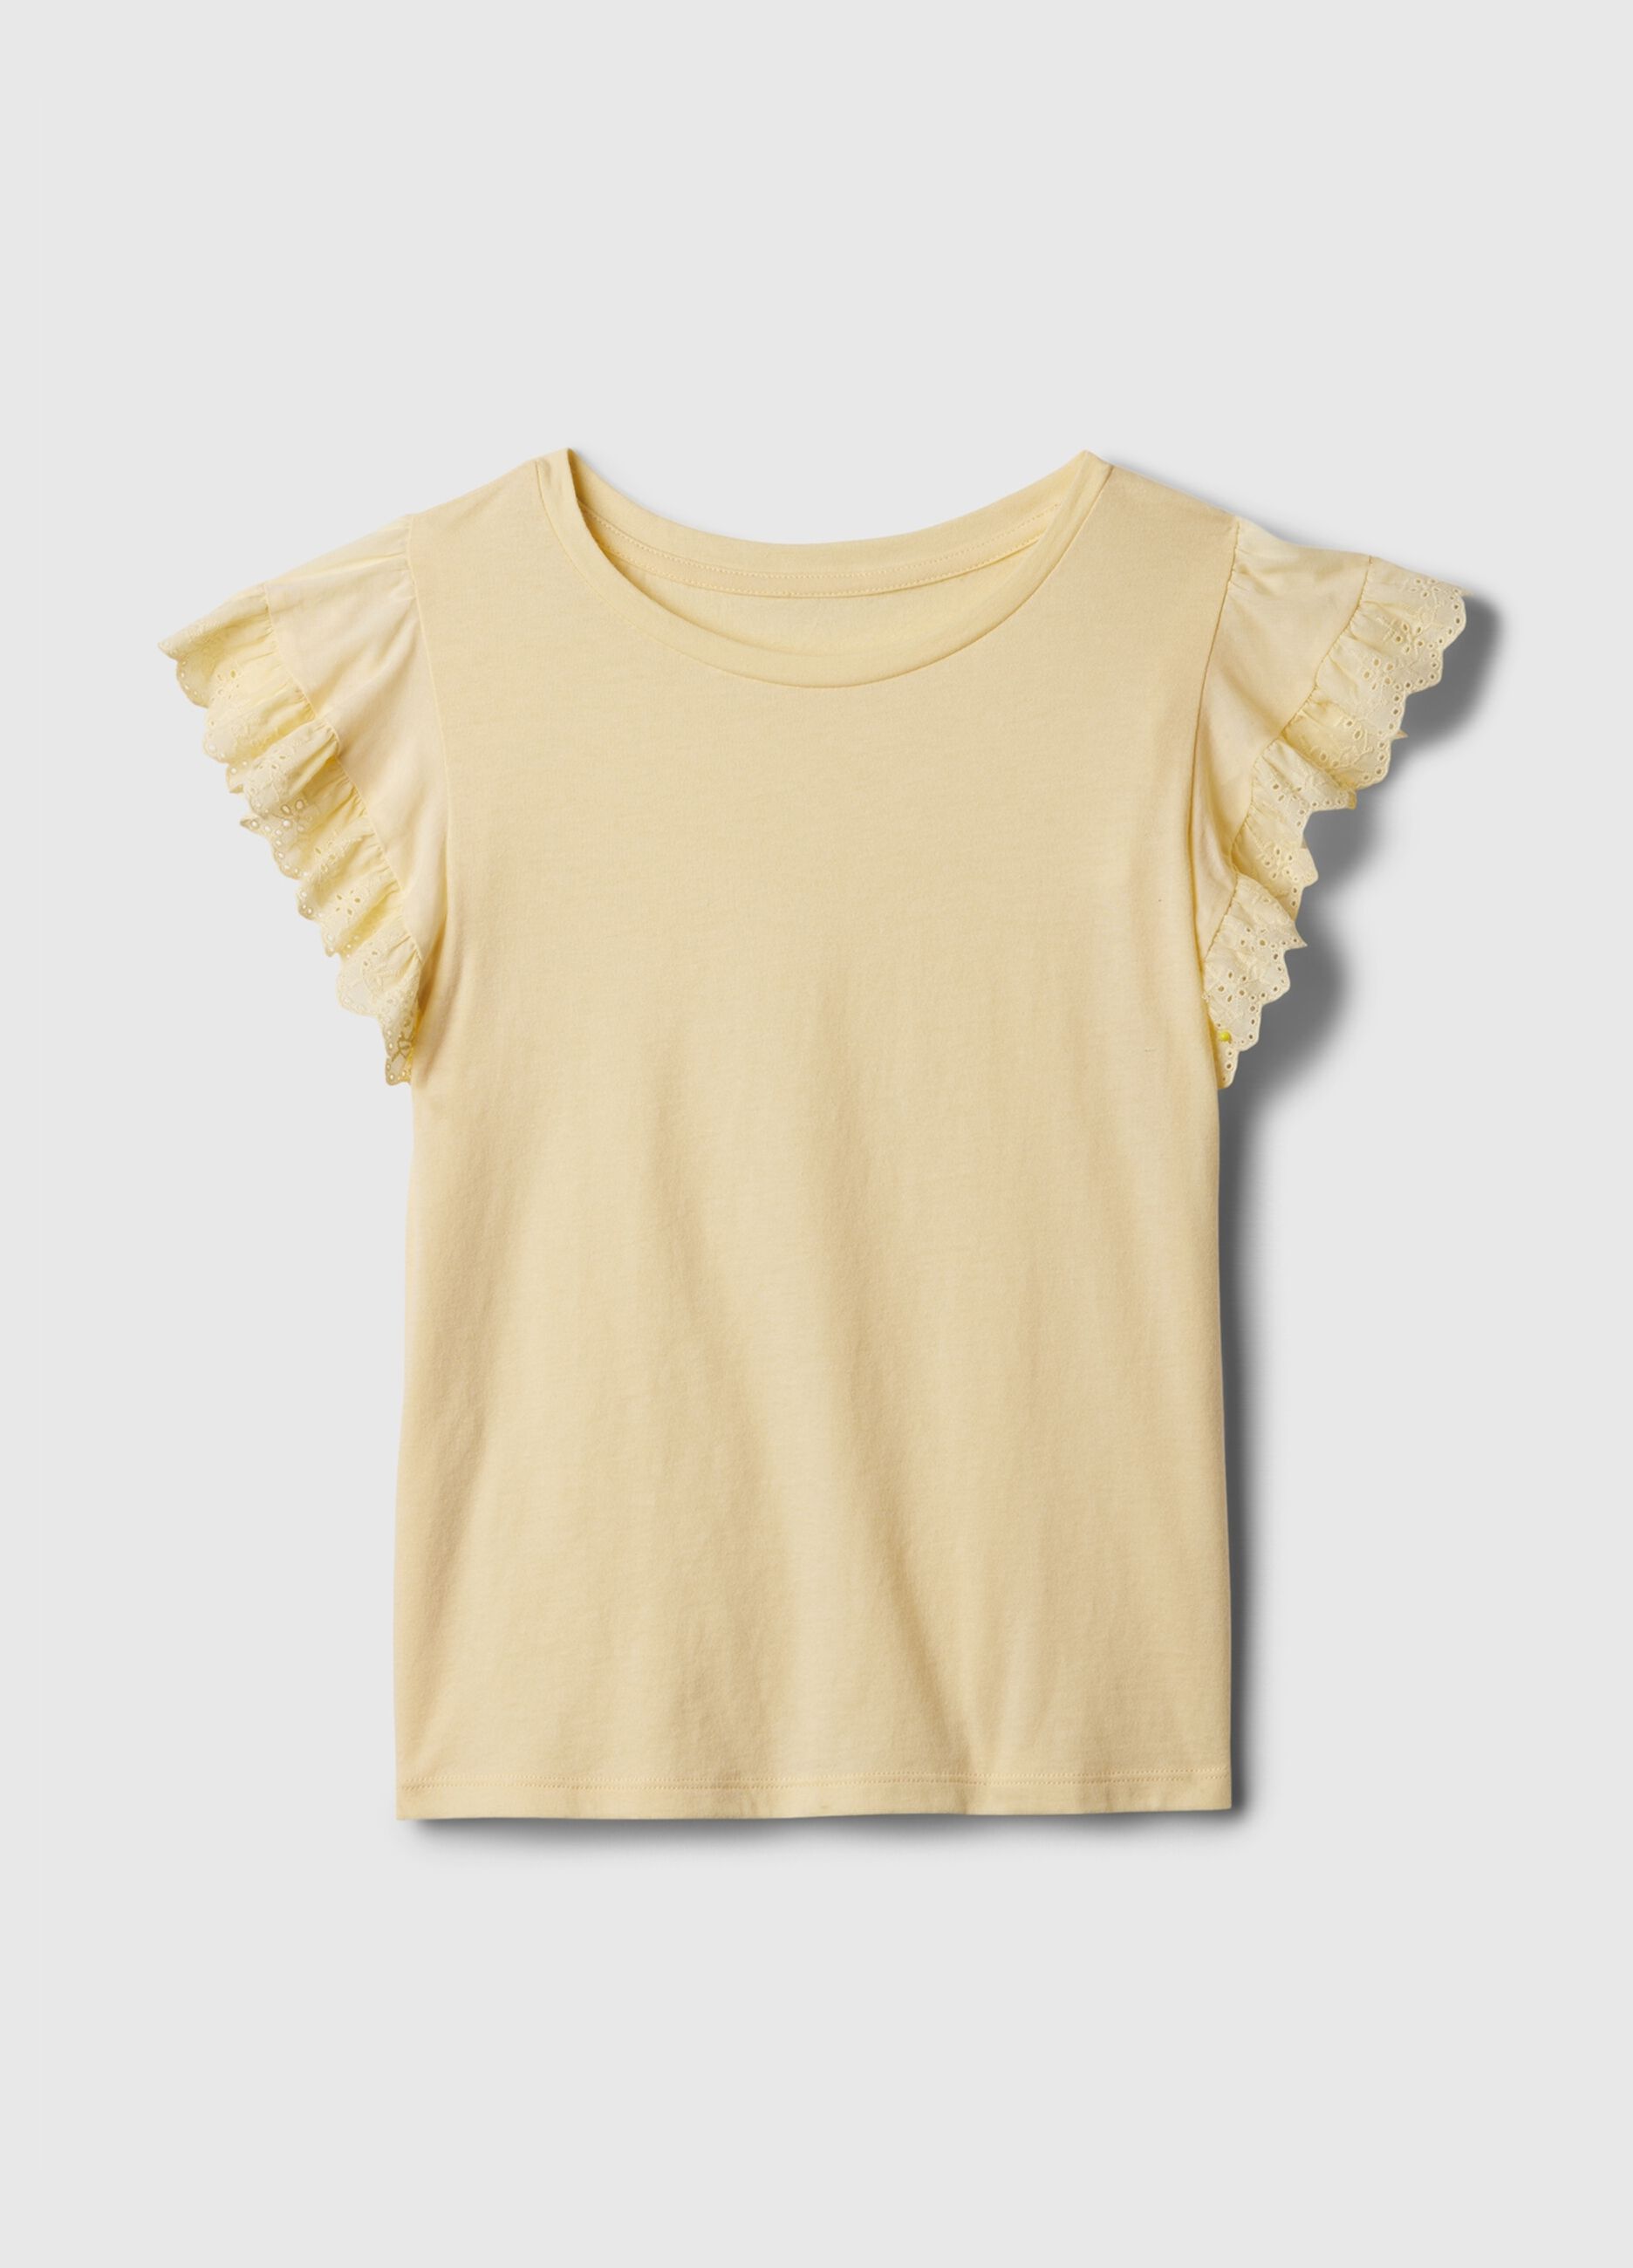 T-shirt in cotone con volant sangallo